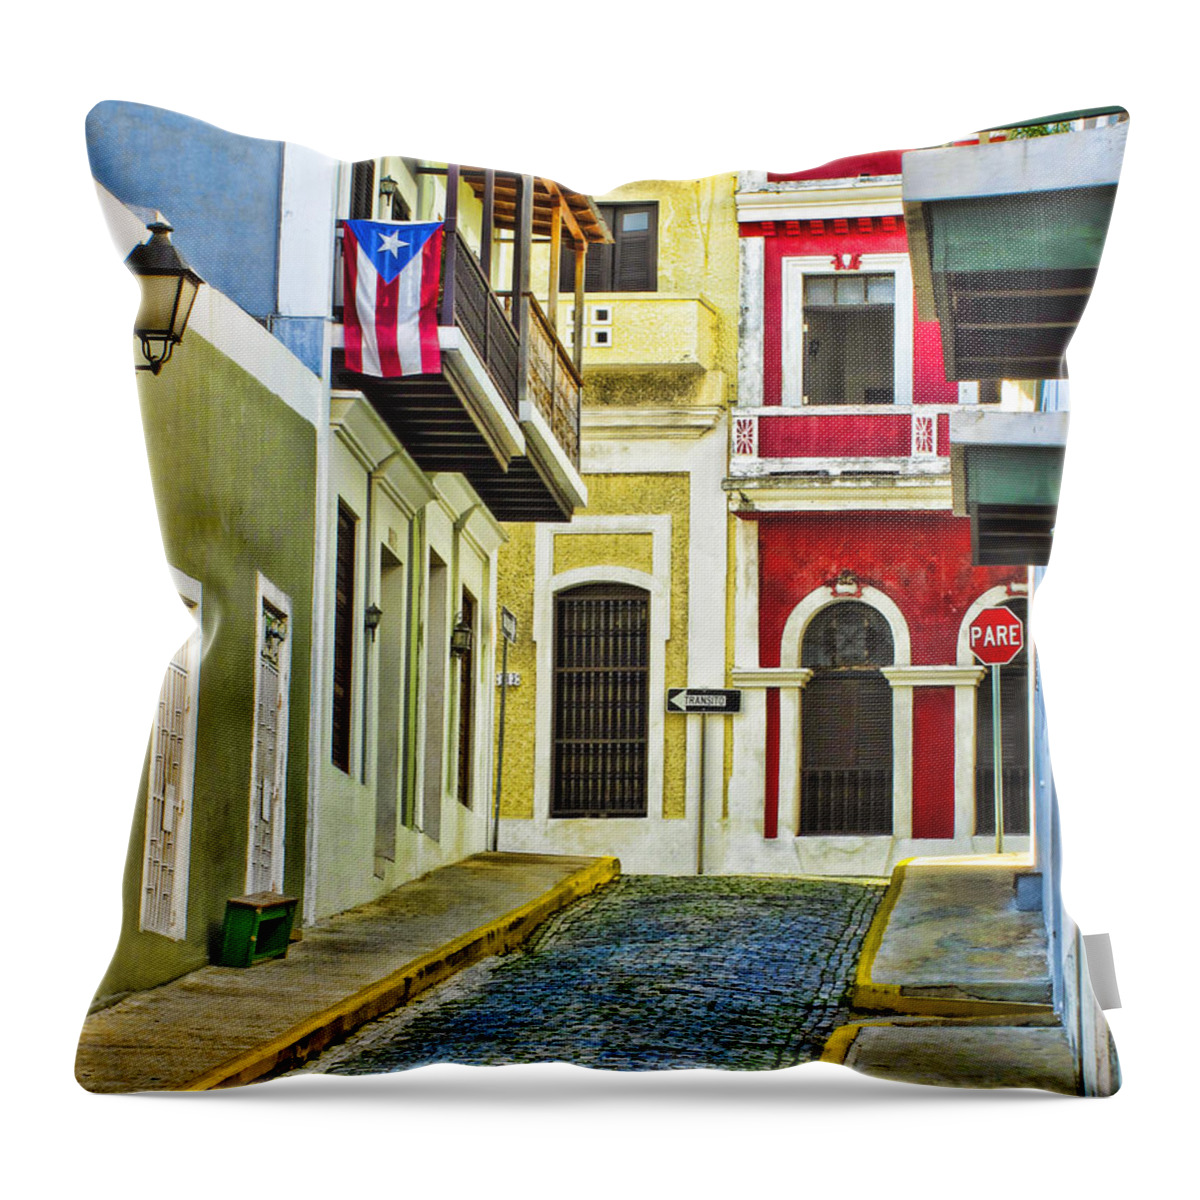 San Juan Throw Pillow featuring the photograph Colors of Old San Juan Puerto Rico by Carter Jones